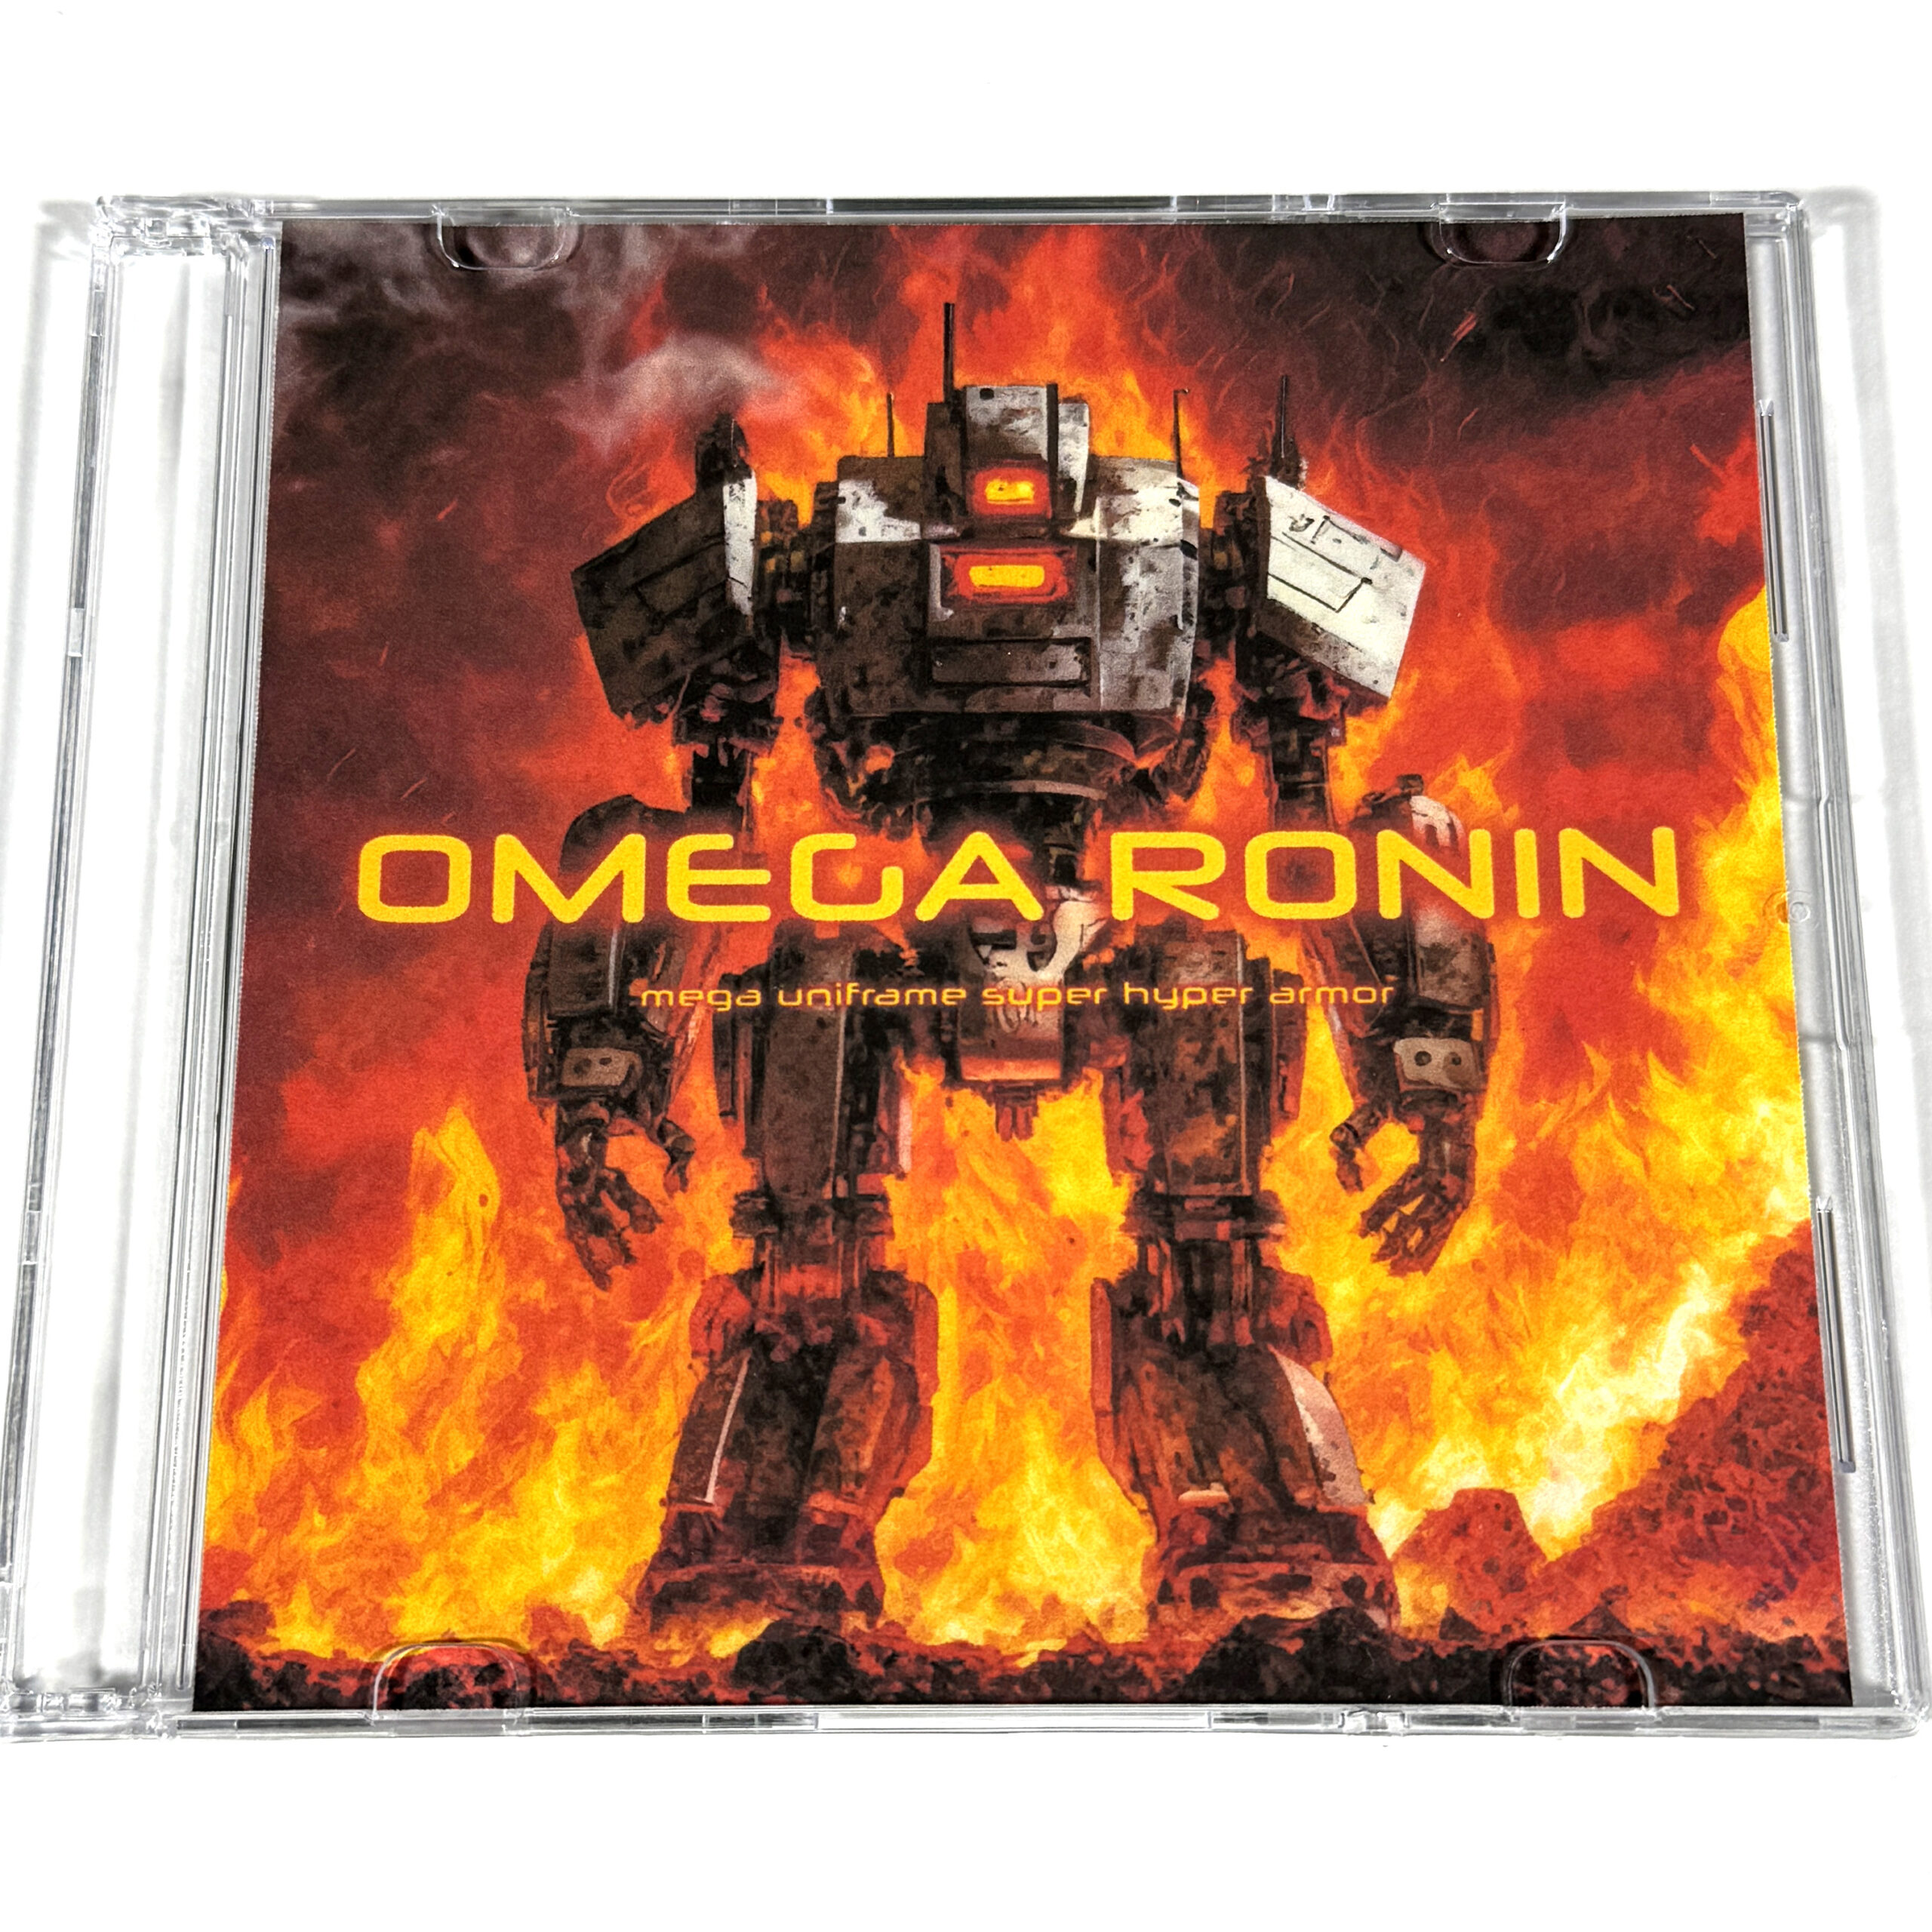 Omega Ronin: Mega Uniframe Super Hyper Armor CD